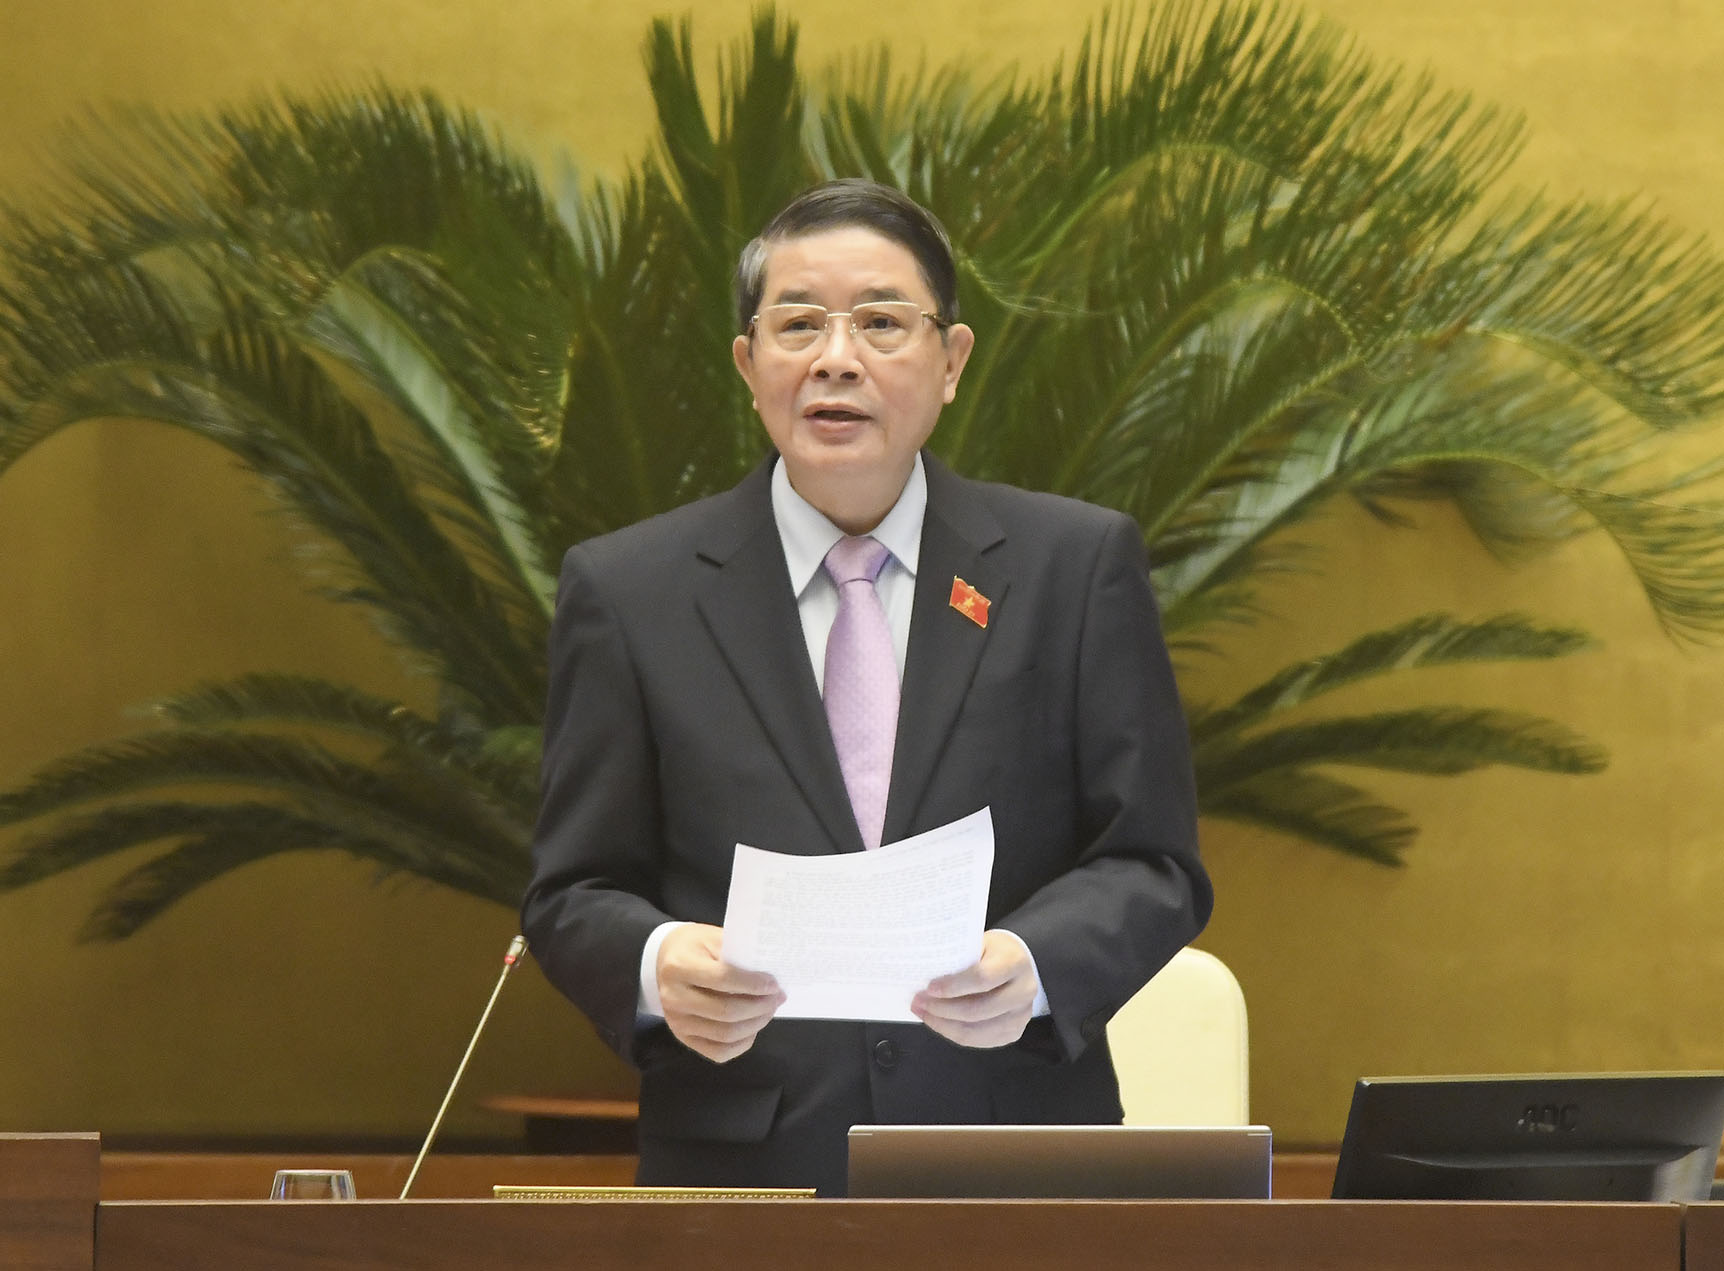 Phó Chủ tịch Quốc hội Nguyễn Đức Hải điều hành nội dung làm việc. Ảnh: Trang thông tin điện tử của Quốc hội